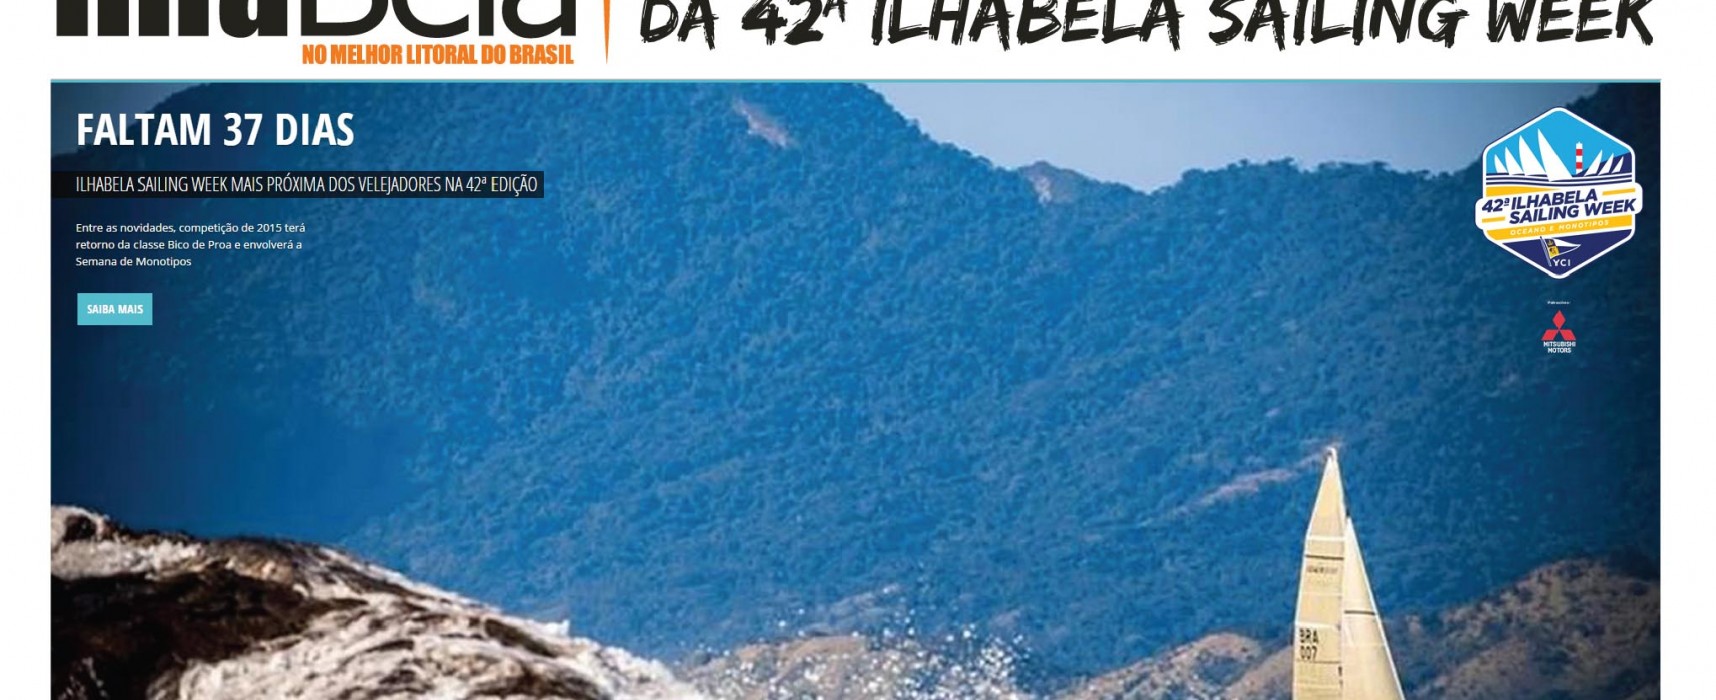 Revista Ilhabela é mídia oficial da 42ª Ilhabela Sailing Week